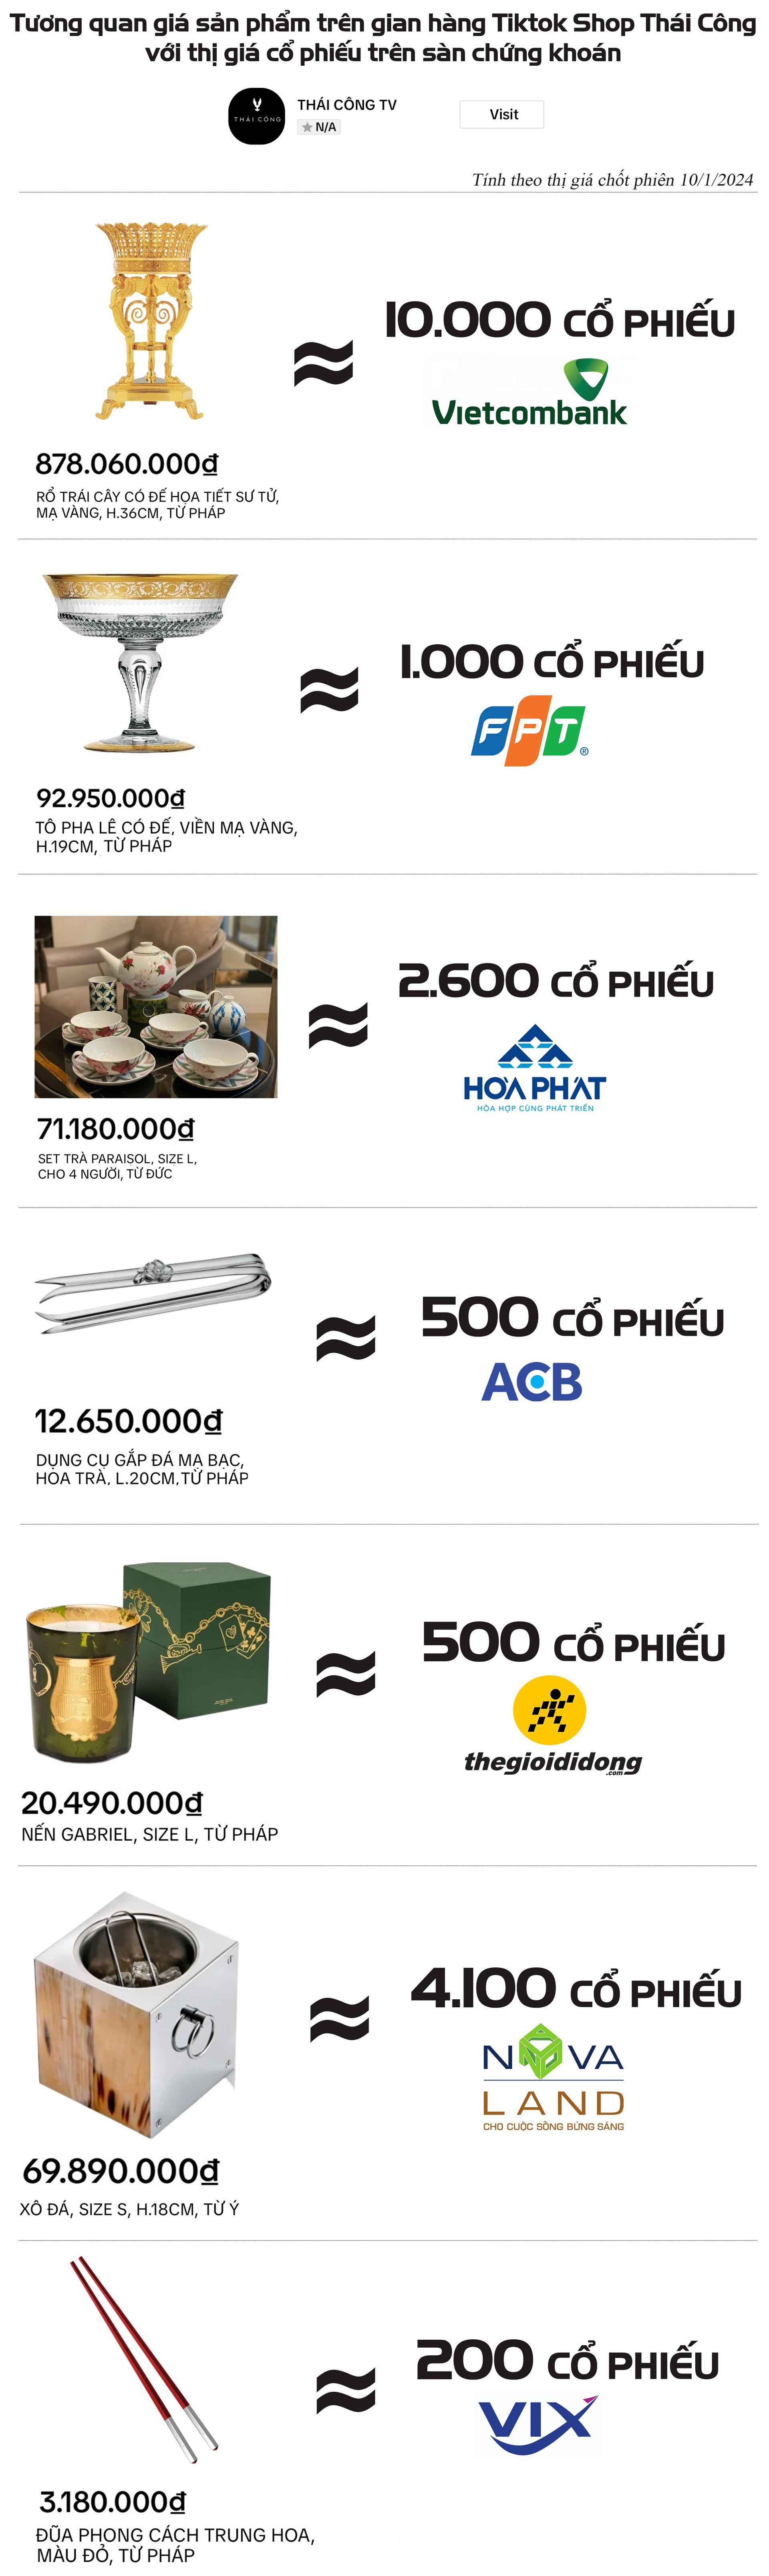 Bất ngờ với mức giá của Shop Thái Công: 10.000 cổ phiếu VCB mua được rổ trái cây, hơn 4.000 cổ phiếu NVL mua được xô đựng đá - Ảnh 1.